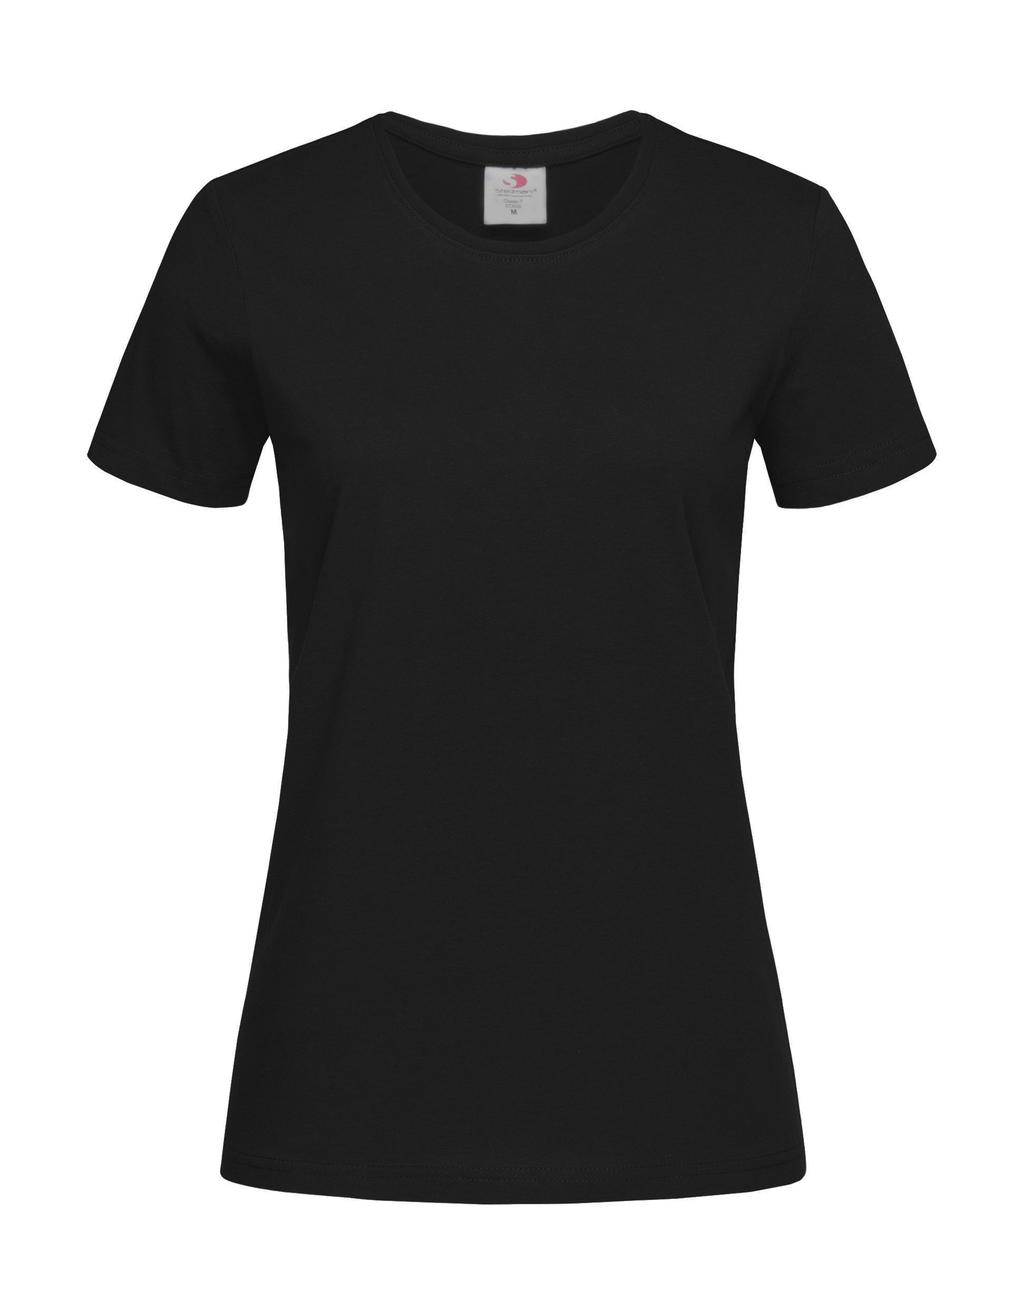 Tričko dámské Stedman Fitted s kulatým výstřihem - tmavě hnědé, XL